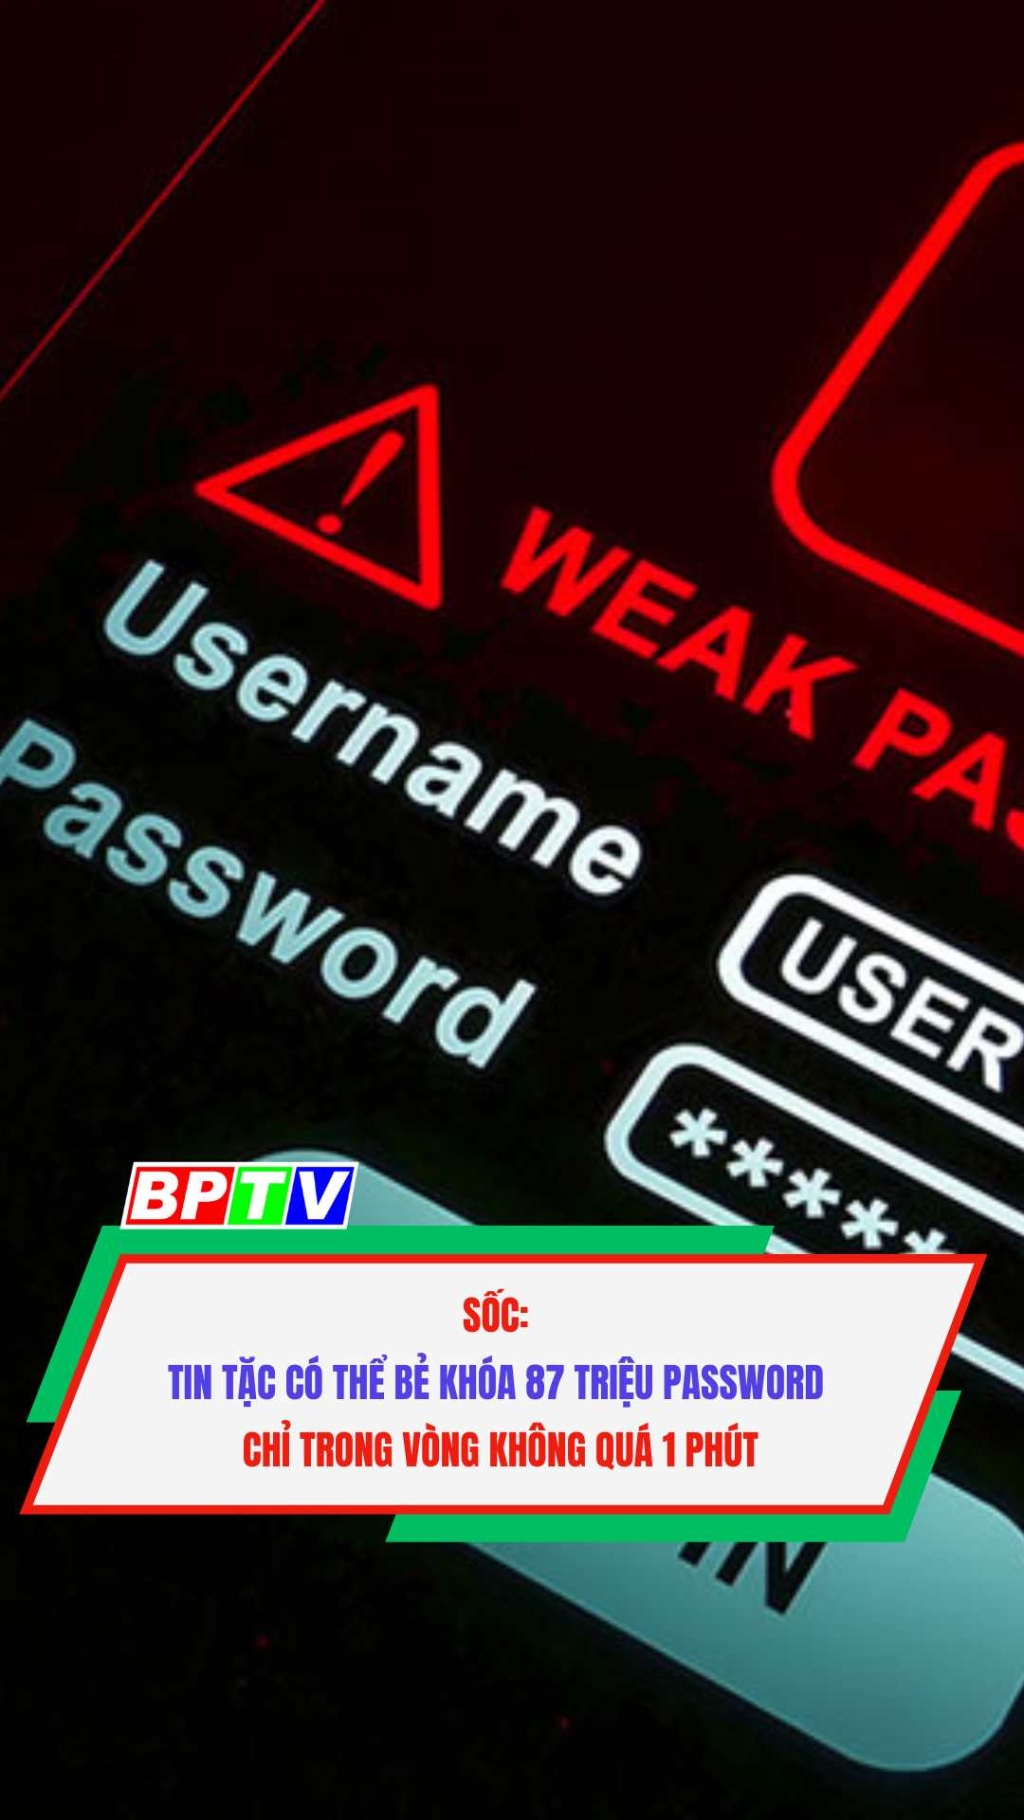 SỐC: Tin tặc có thể bẻ khóa 87 triệu password chỉ trong vòng không quá 1 phút #shorts